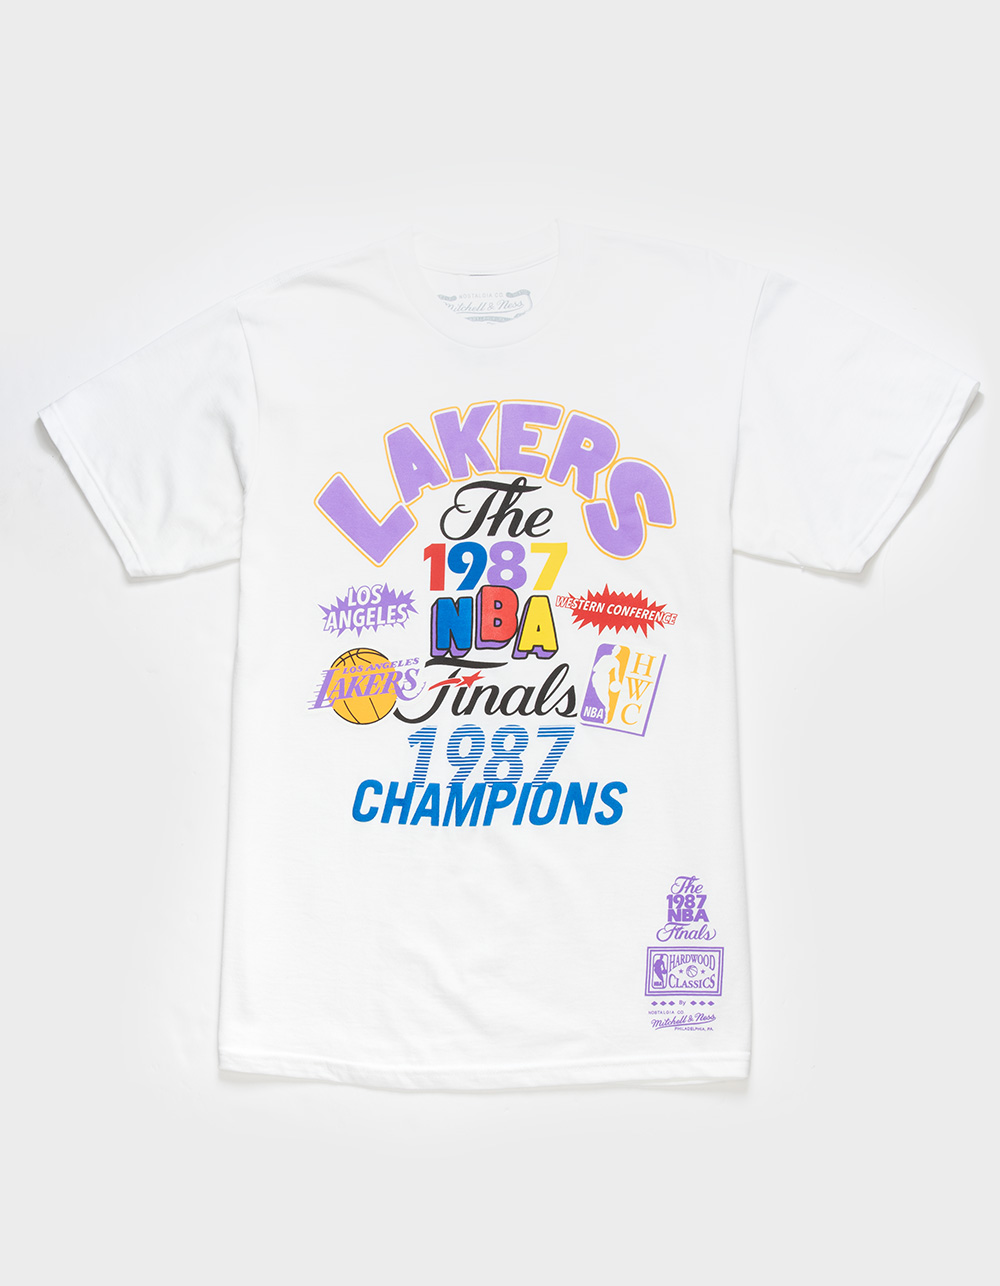 Los Angeles Lakers  Los angeles lakers, Lakers, Skateboard companies